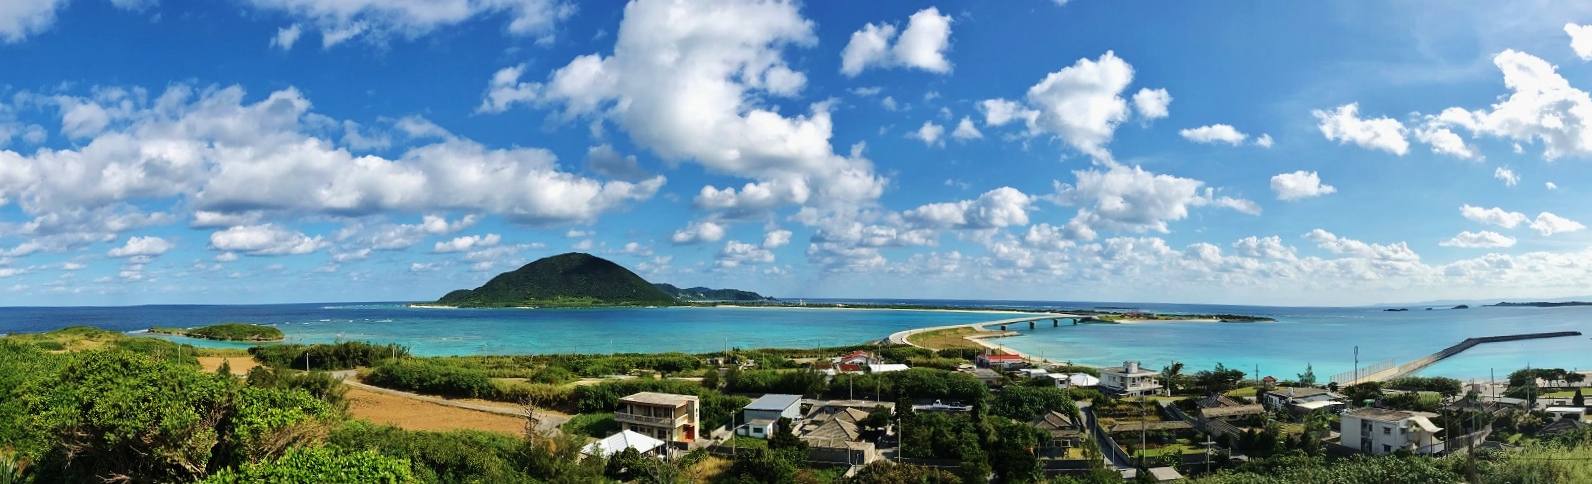 沖縄本島ドライブだけじゃ物足りない 年 沖縄おすすめビーチランキング 沖縄離島編 Okinawa Beach Blog